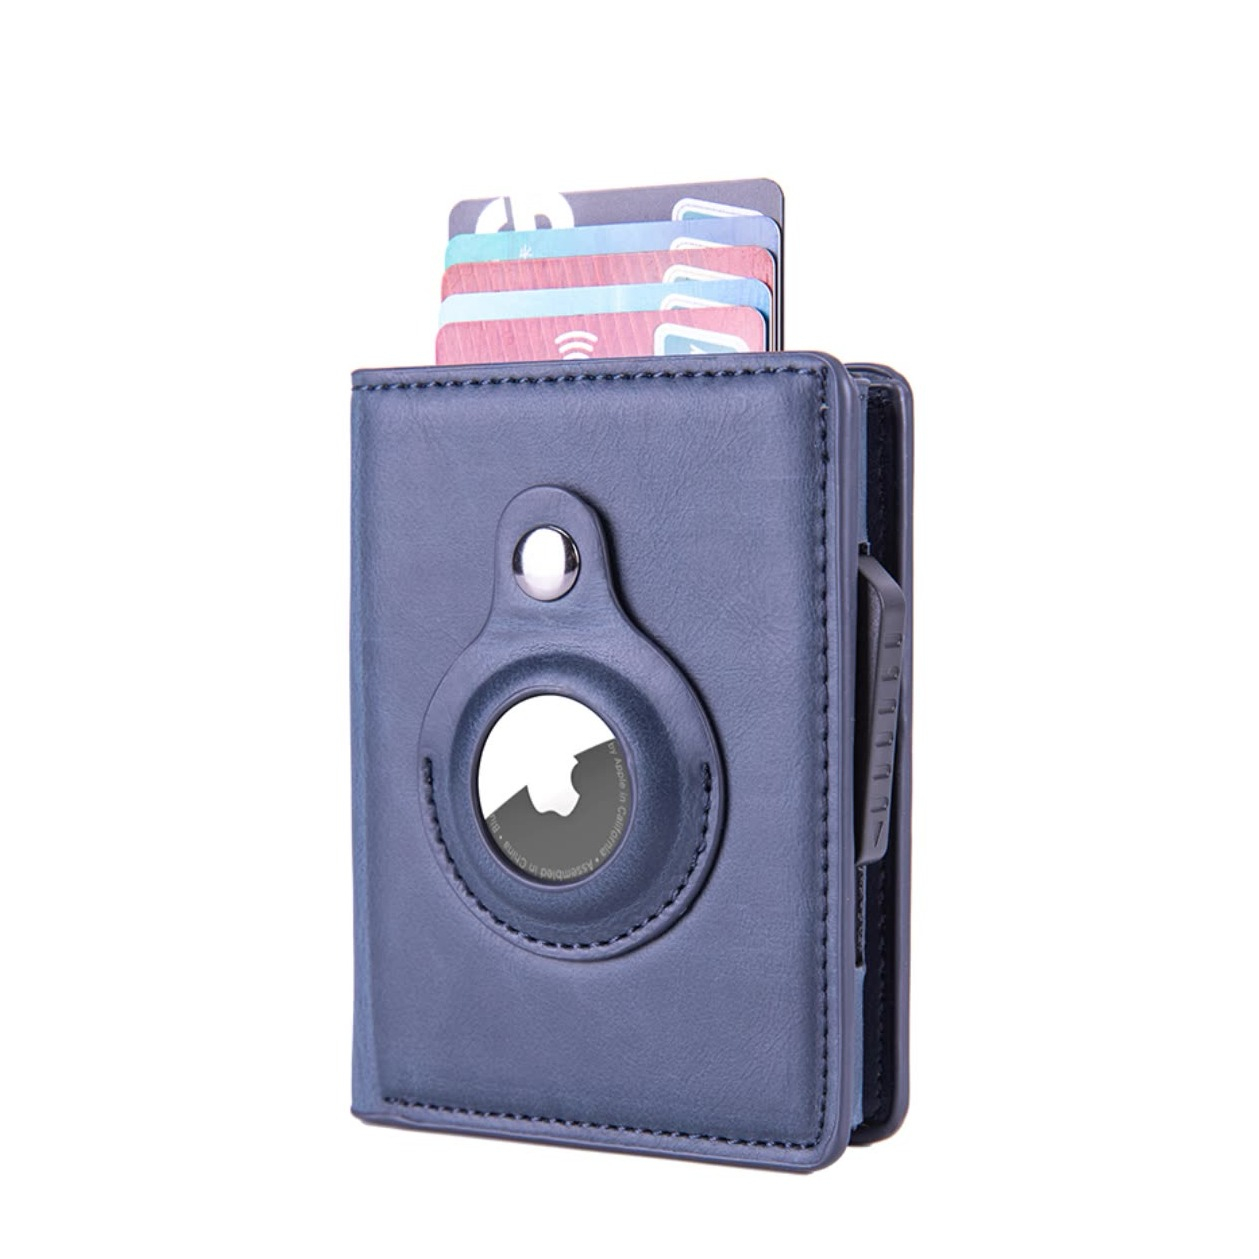 Image of (10.6x8.2x2.6cm) Apple AirTag Wallet Mini Kreditkarten Leder Etui Geldbörse mit Kartenauswurf-Mechanismus für 10 Karten - Dunkelblau bei Apfelkiste.ch